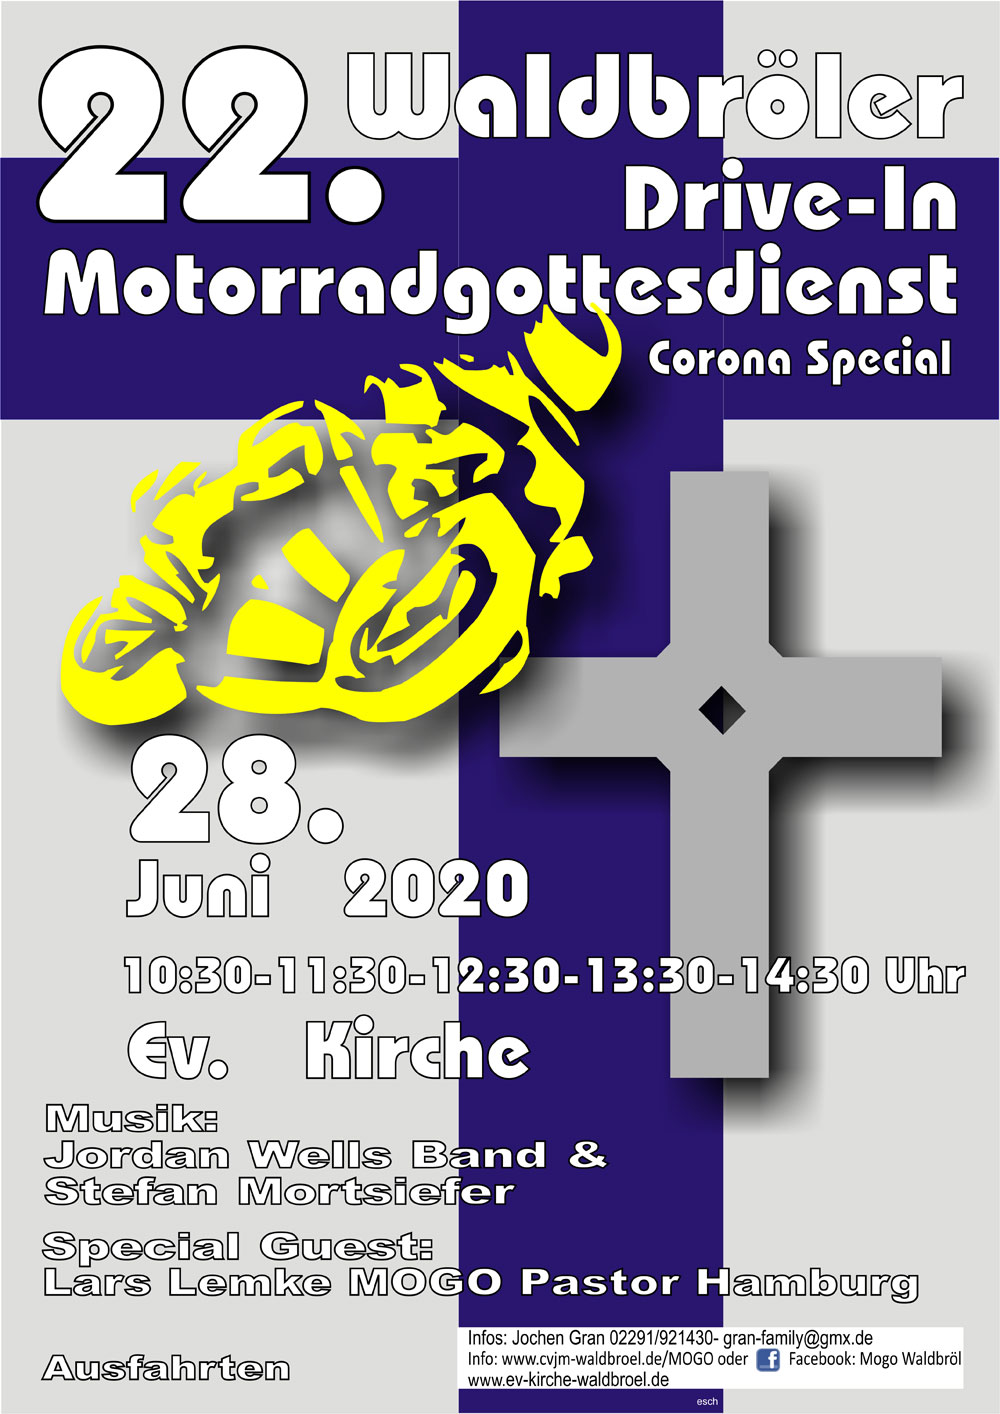 22. Motorradgottesdienst in Waldbröl am 28. Juni